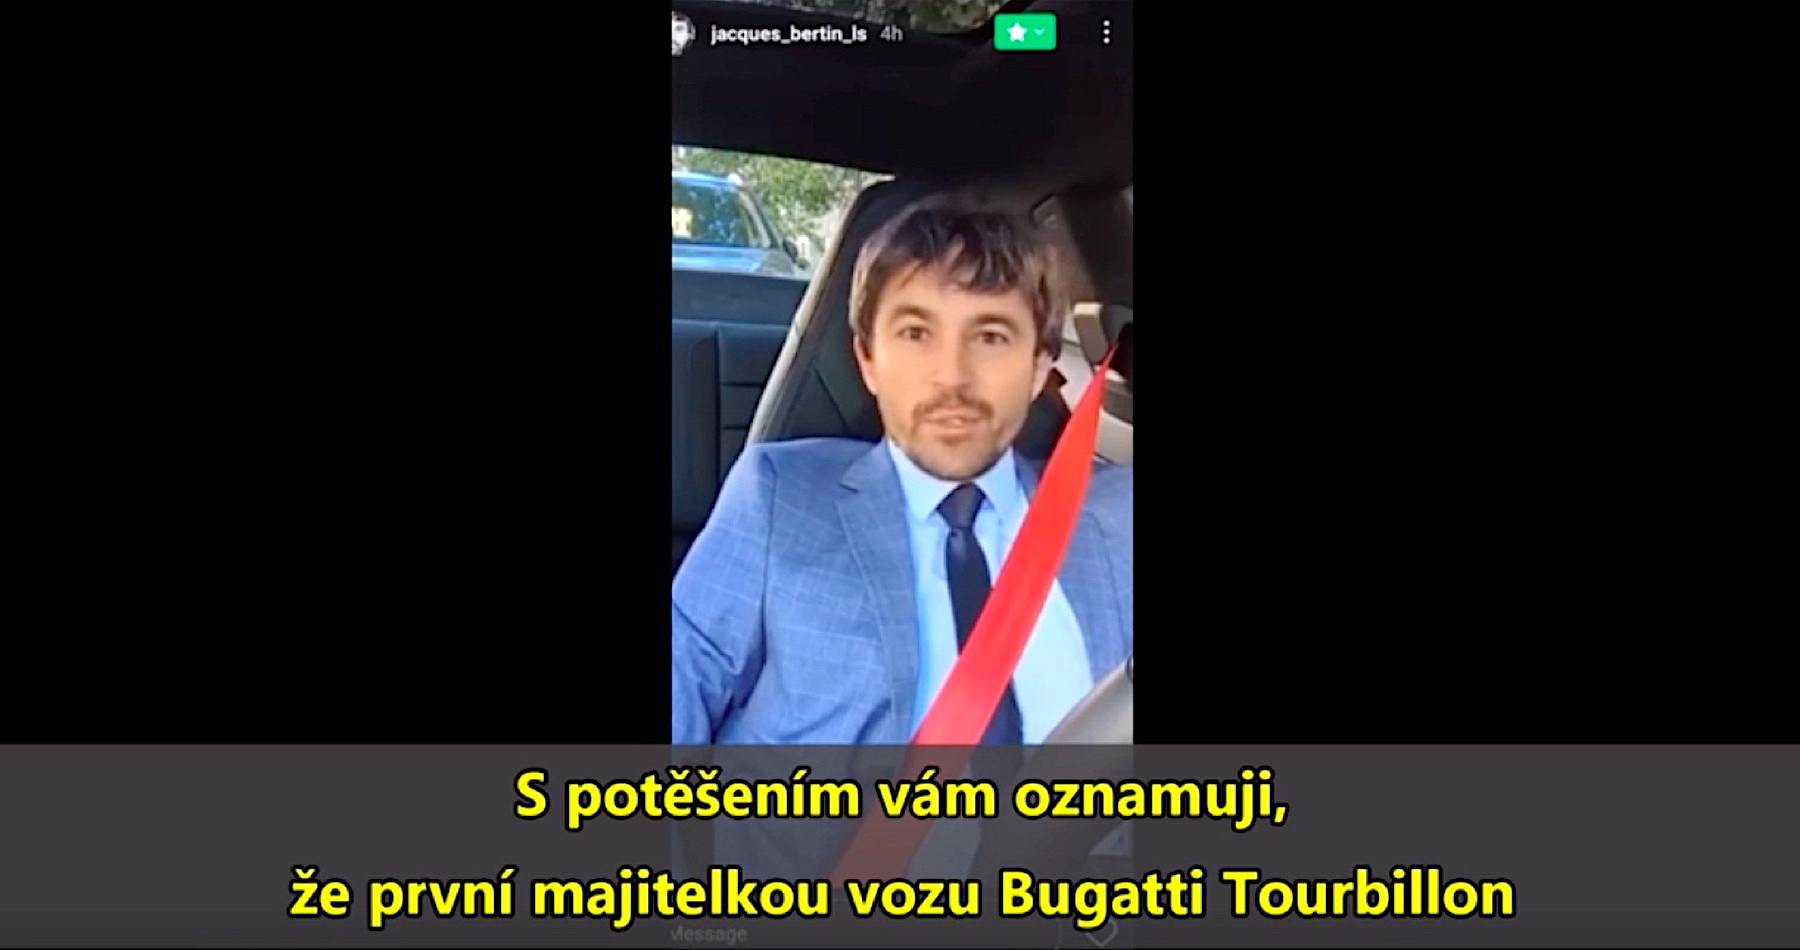 VIDEO: Zelenského manželka Olena si kúpila jedno z najdrahších športových áut na svete - superšportiak Bugatti Tourbillon za 4,5 milióna eur, čo potvrdil aj francúzsky predajca